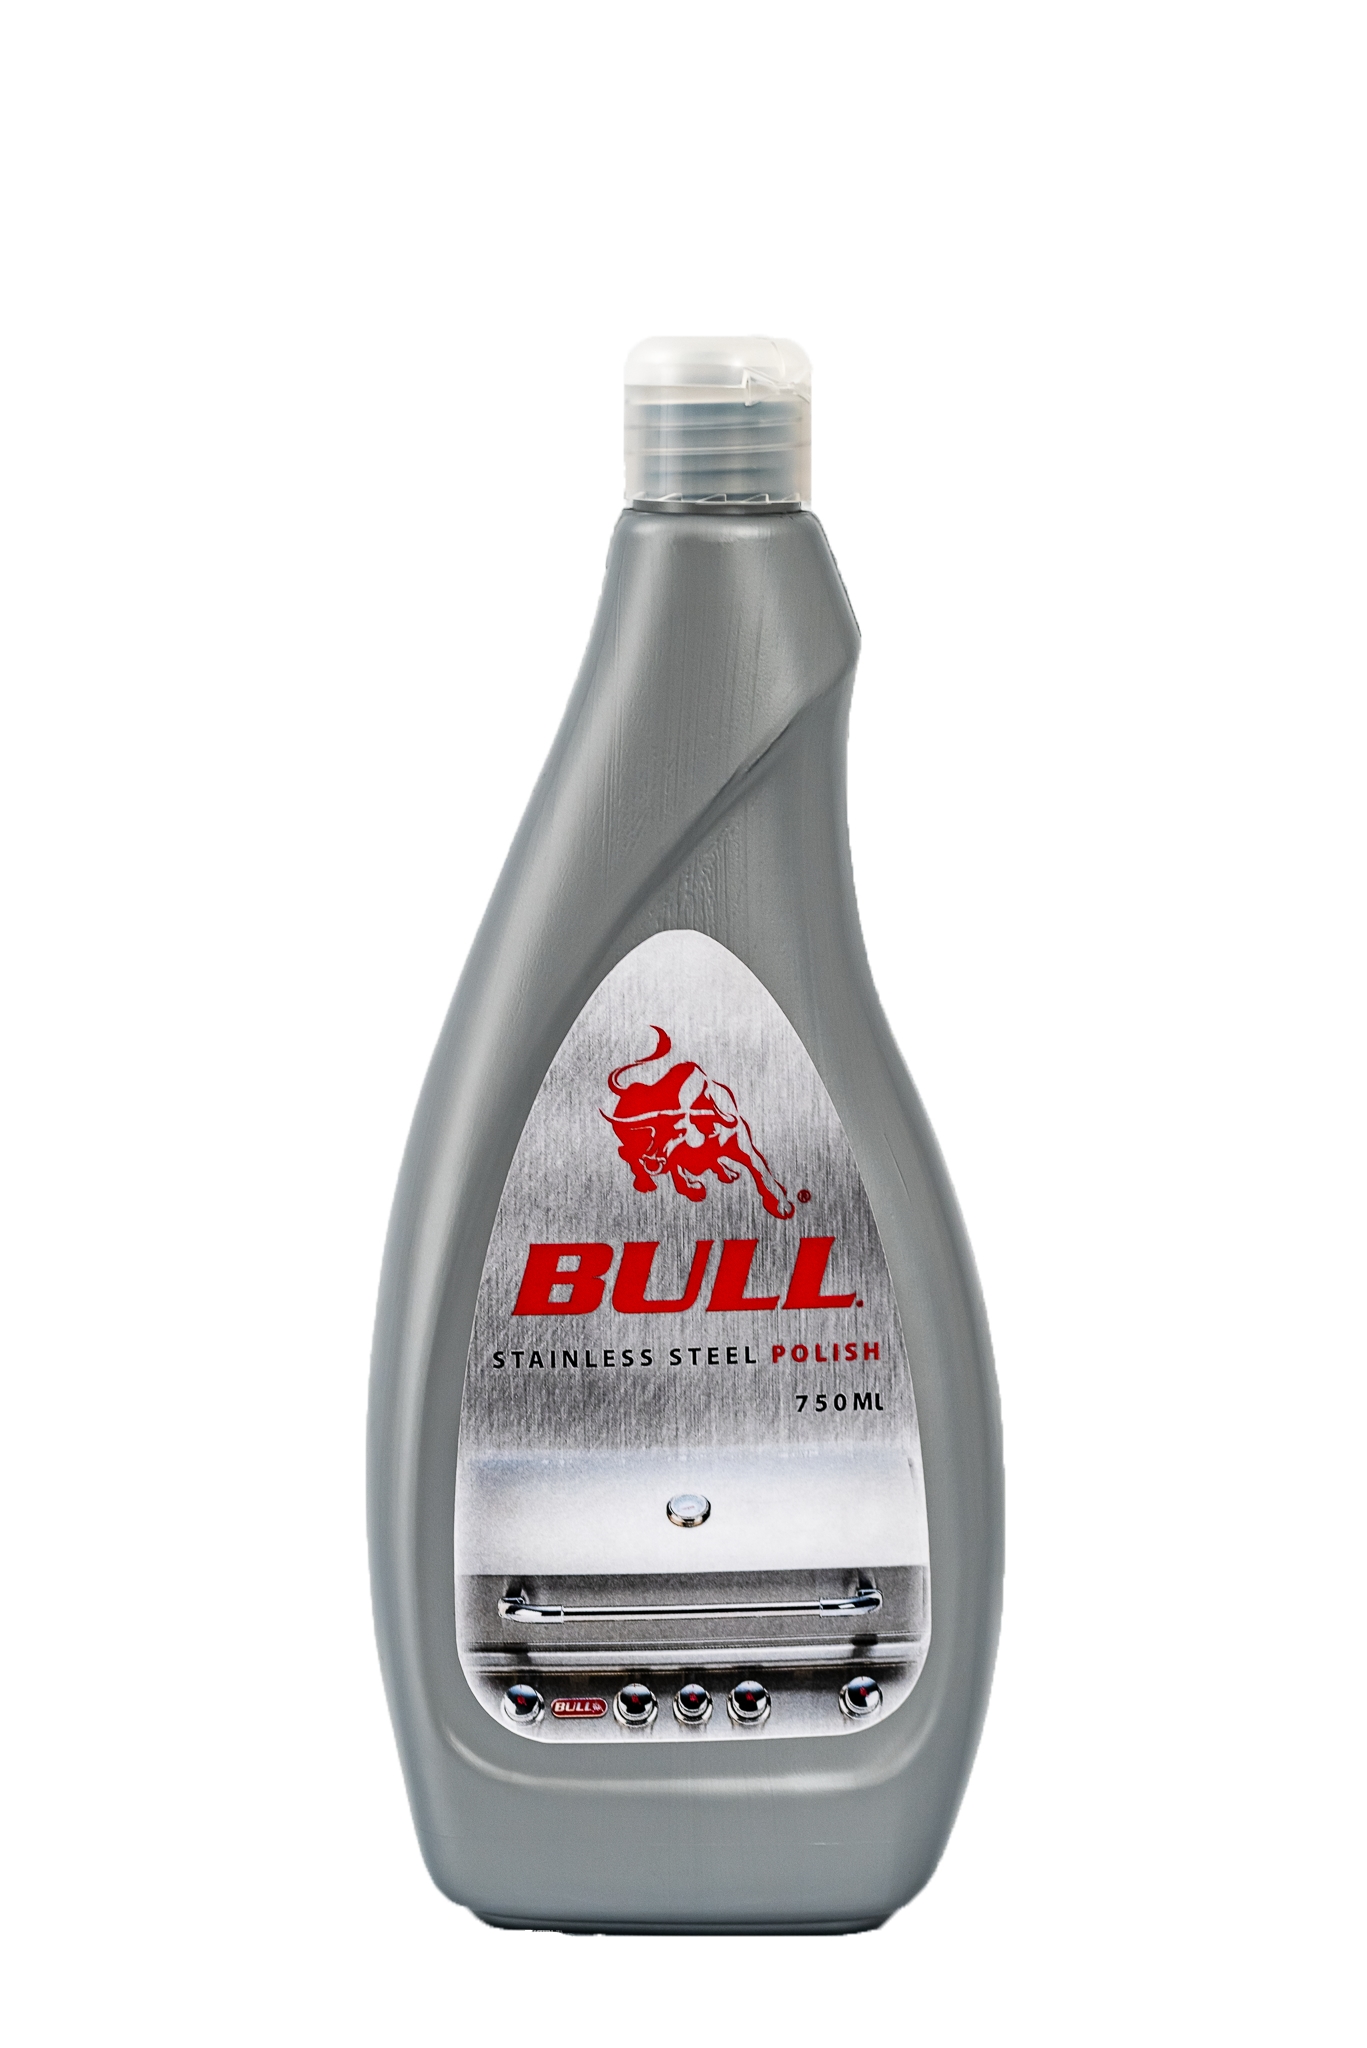 Caja de mantenimiento barbacoas bull, incluye elementos para limpieza y mantenimiento